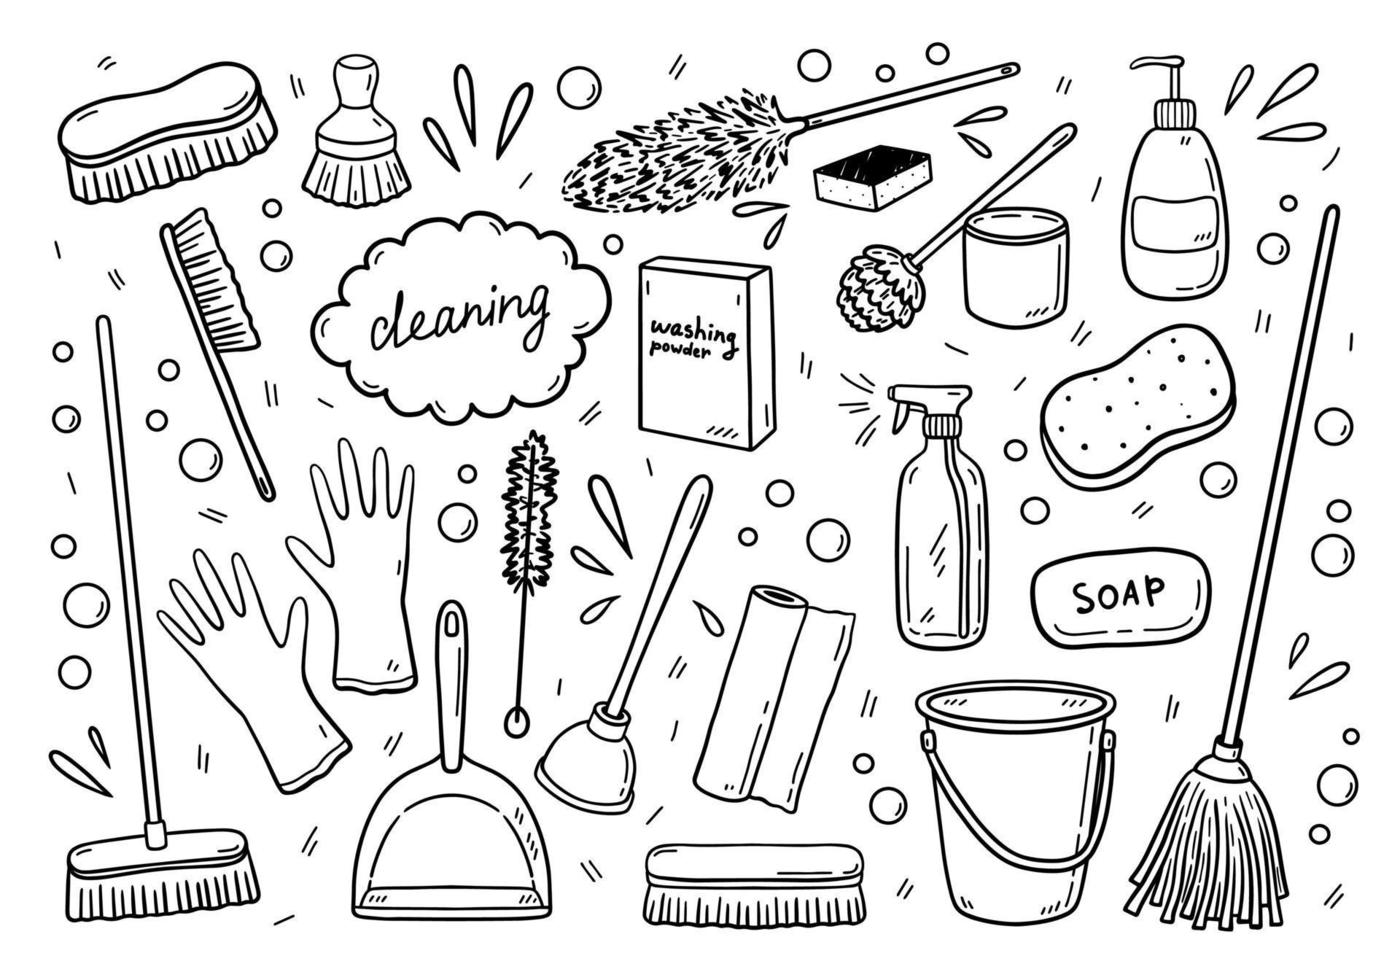 doodle uppsättning olika föremål för rengöring vektor